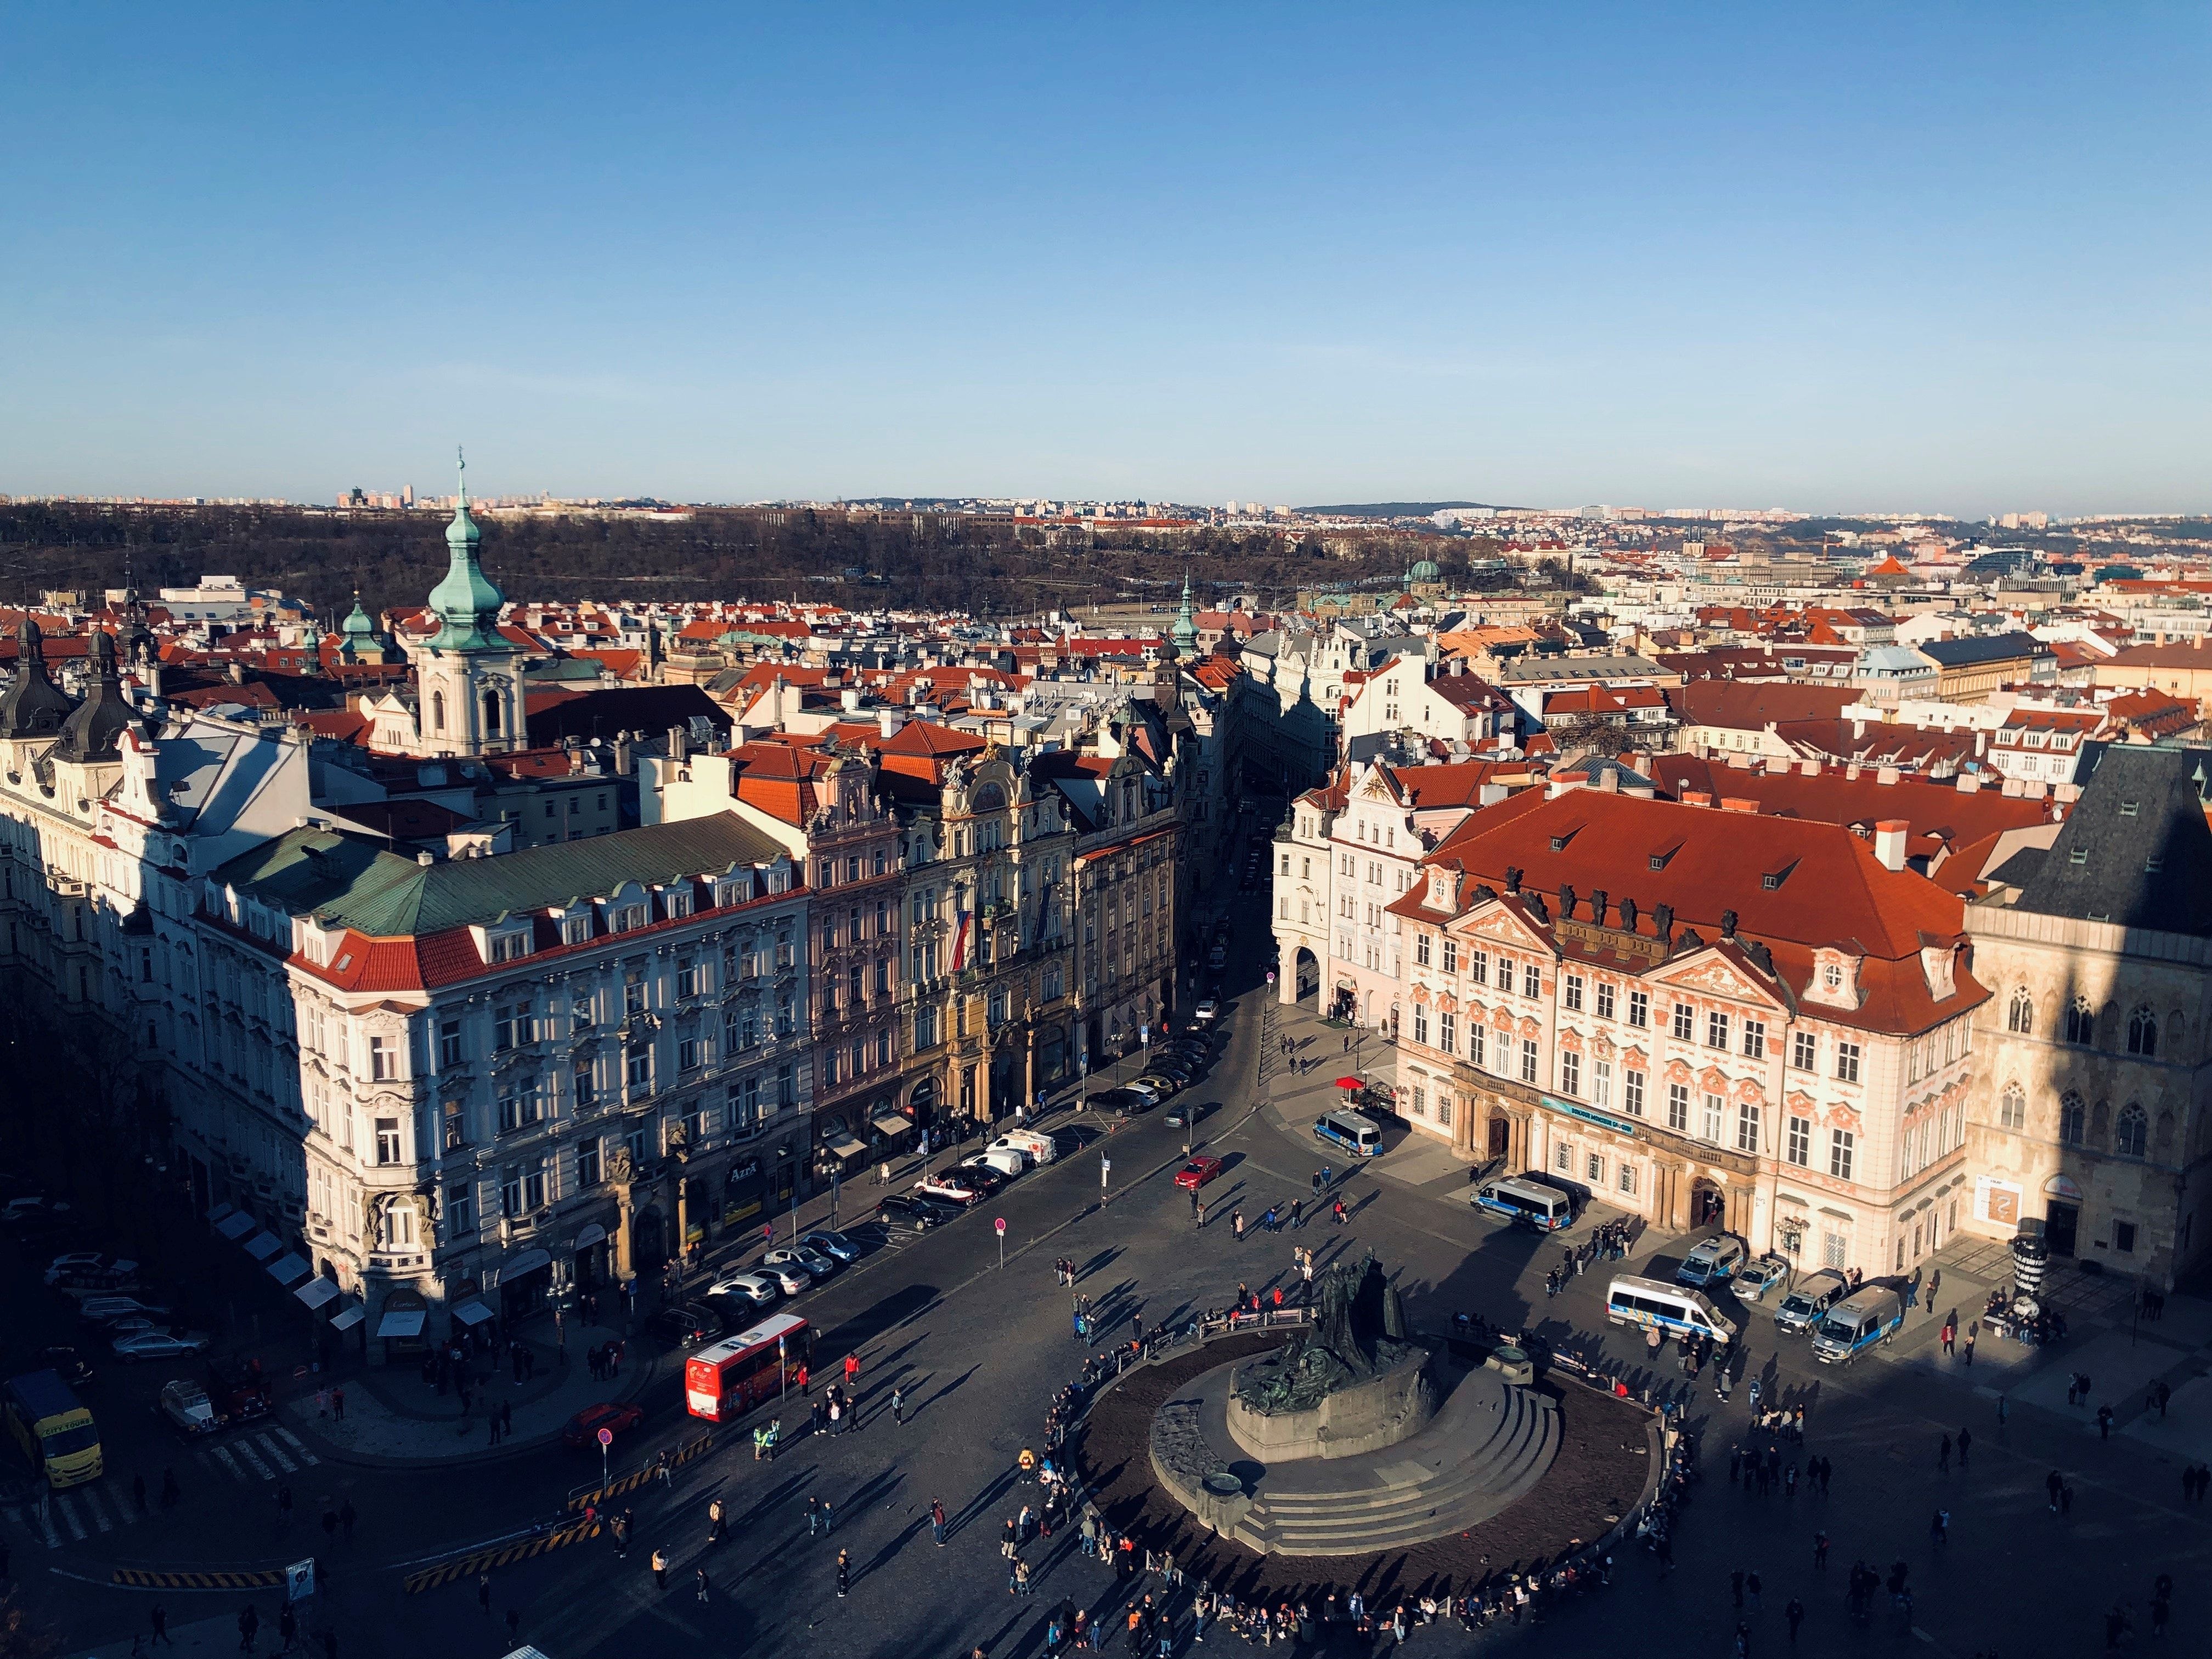 Купить жилье в Чехии - сколько это стоит и что обычно выбирают украинцы - Недвижимость